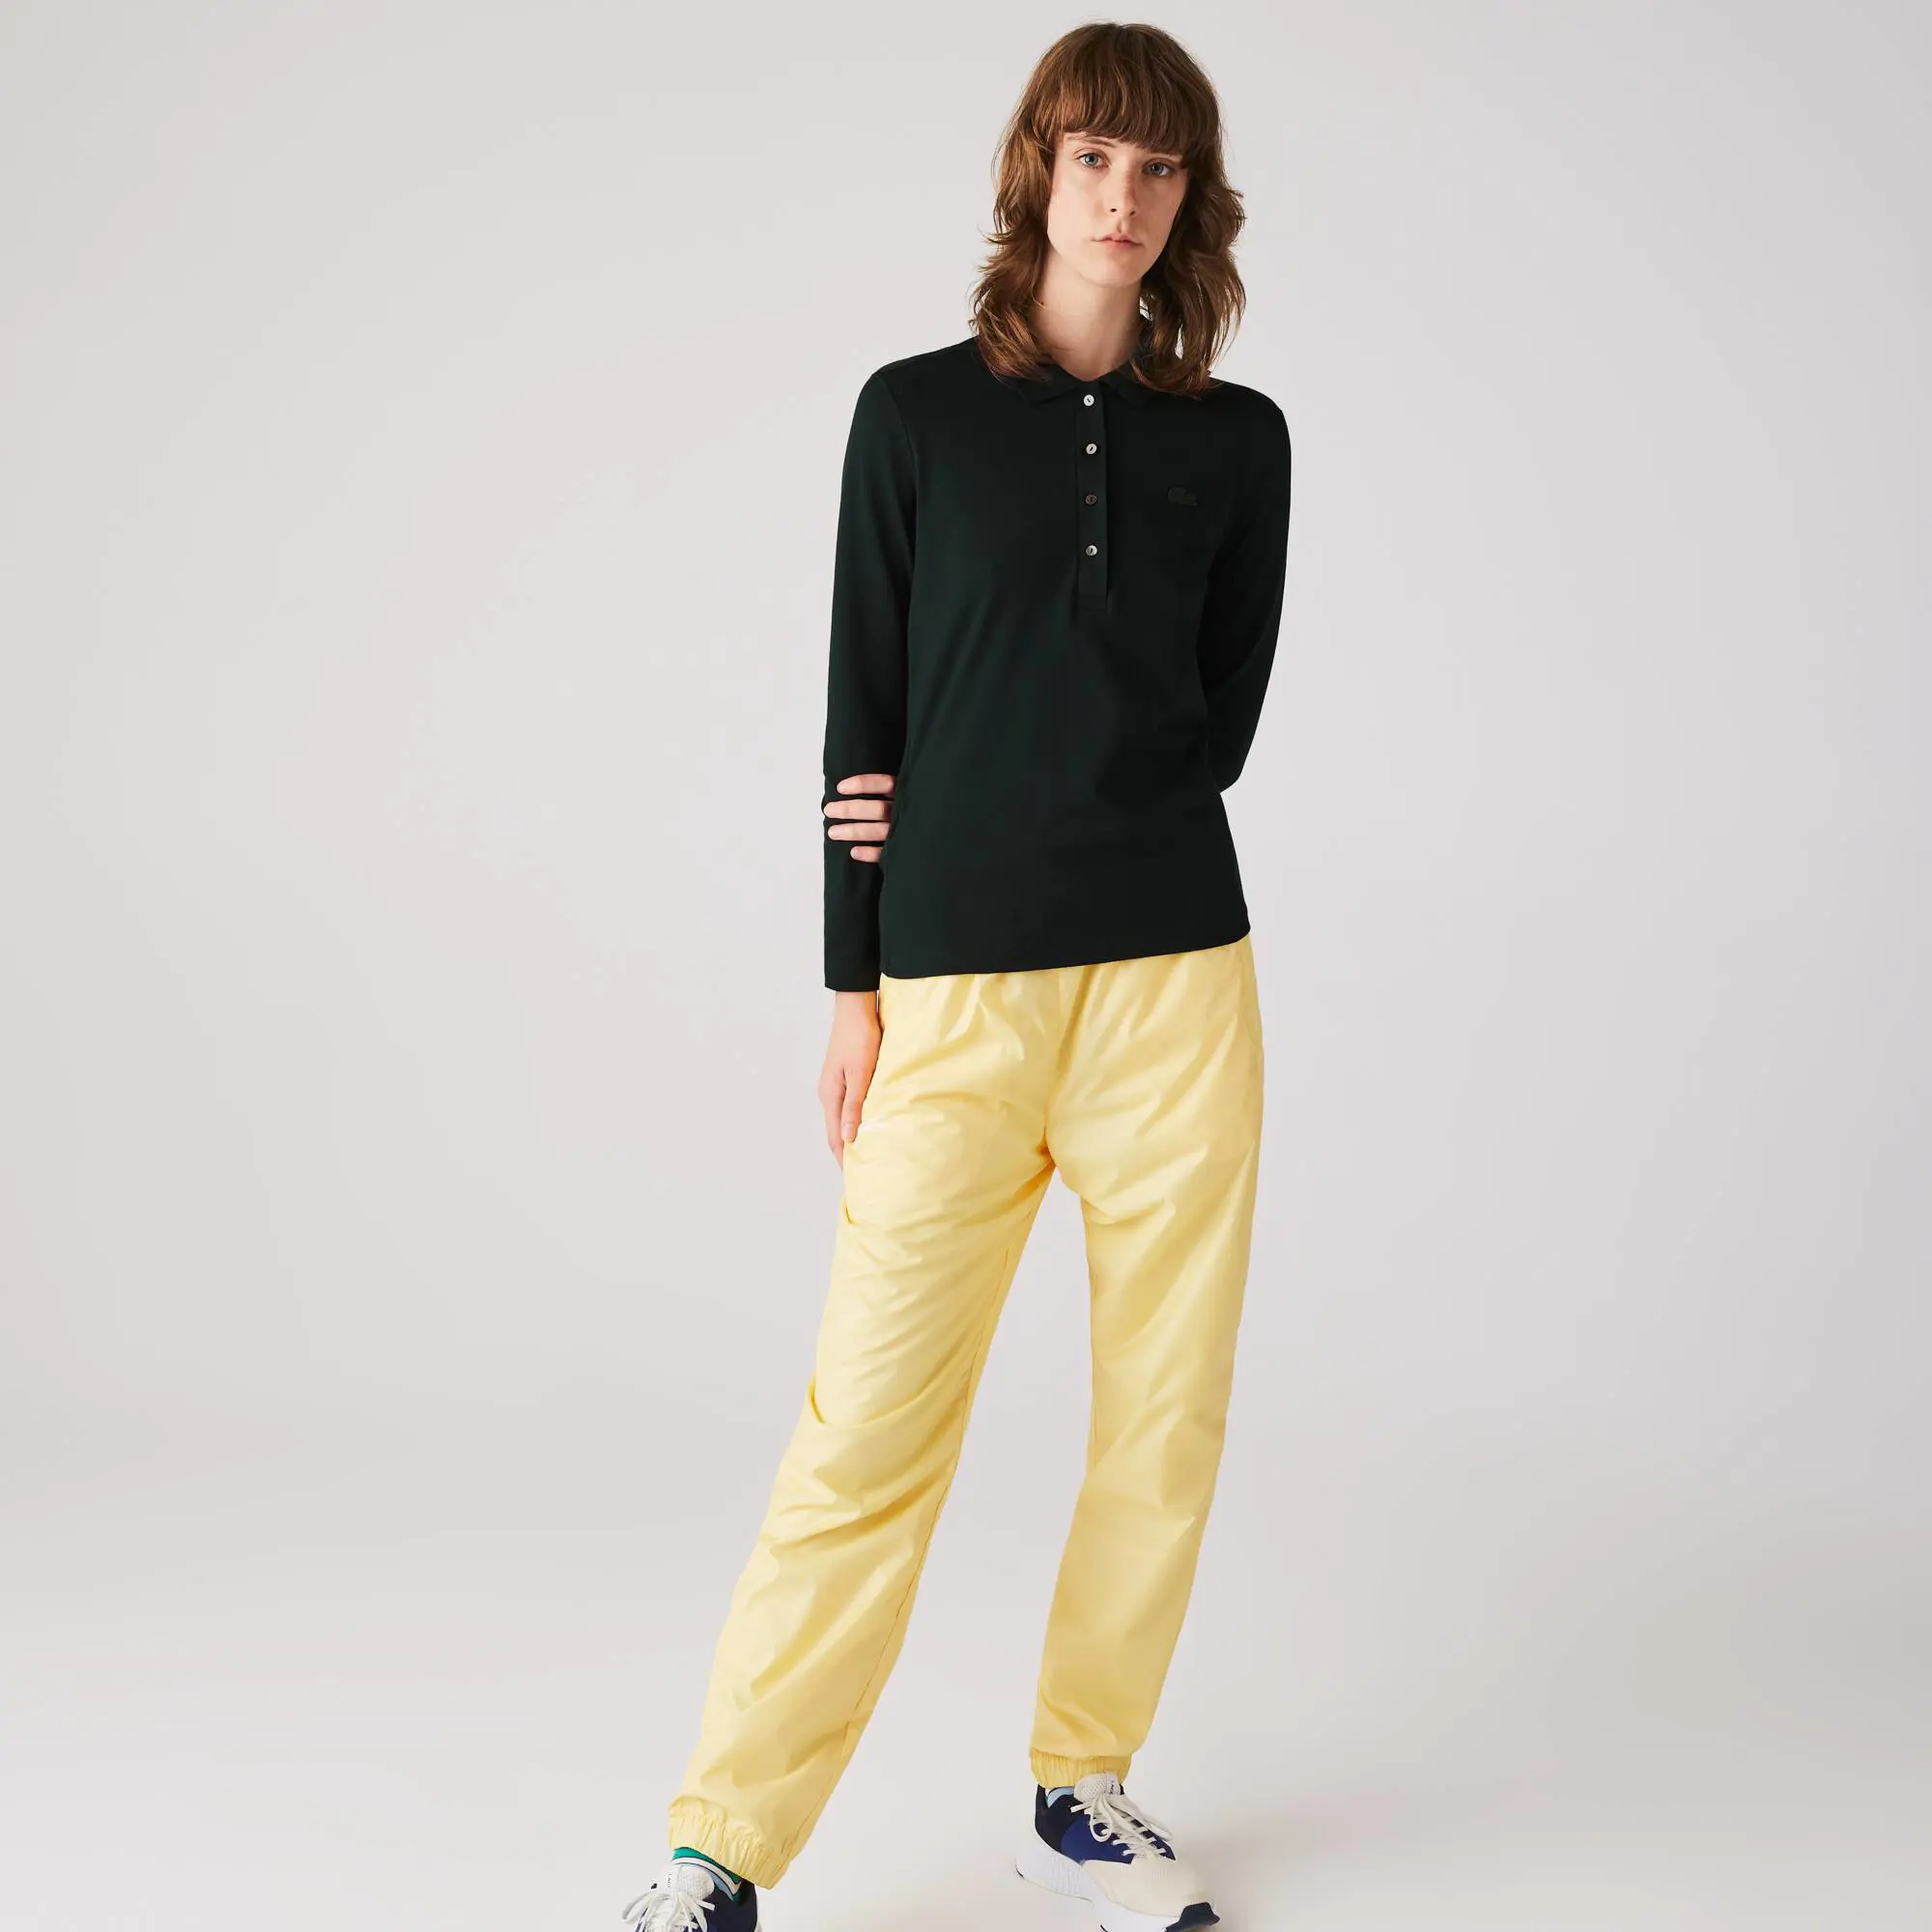 Lacoste Women’s Slim fit Stretch Piqué Lacoste Polo Shirt. 1